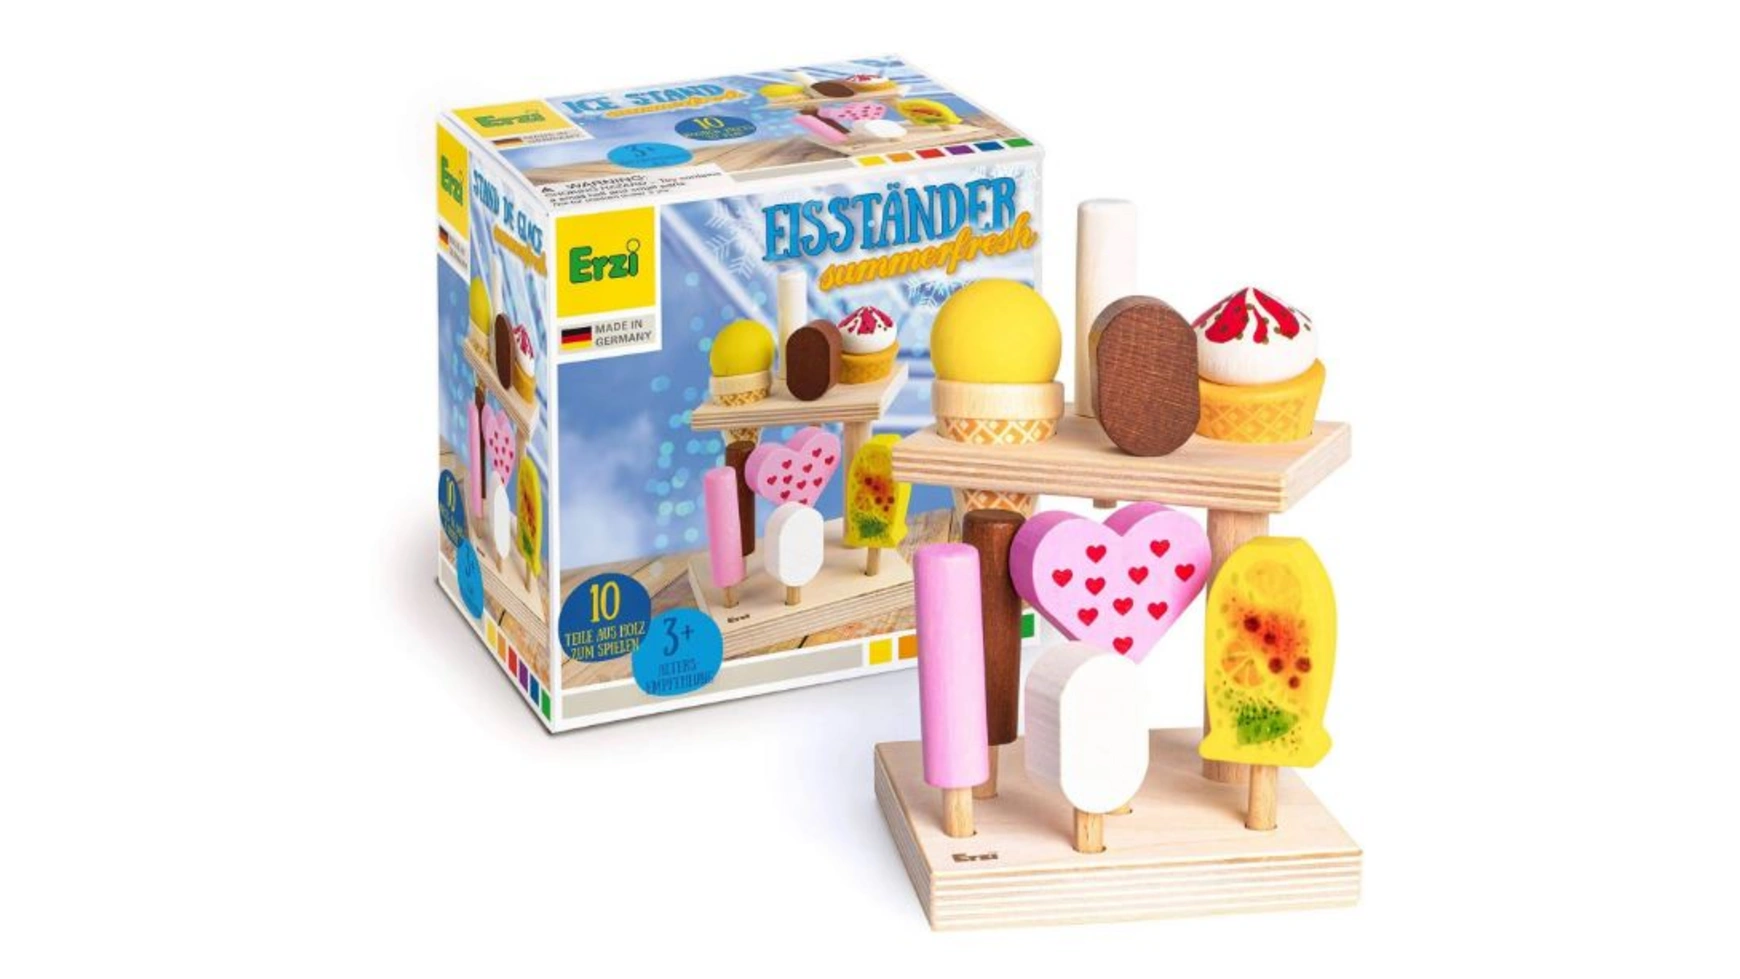 карамель на палочке лучистик мороженое ассорти 10 г Erzi Стенд с мороженым Summerfresh, детский магазин и игровые кухонные аксессуары